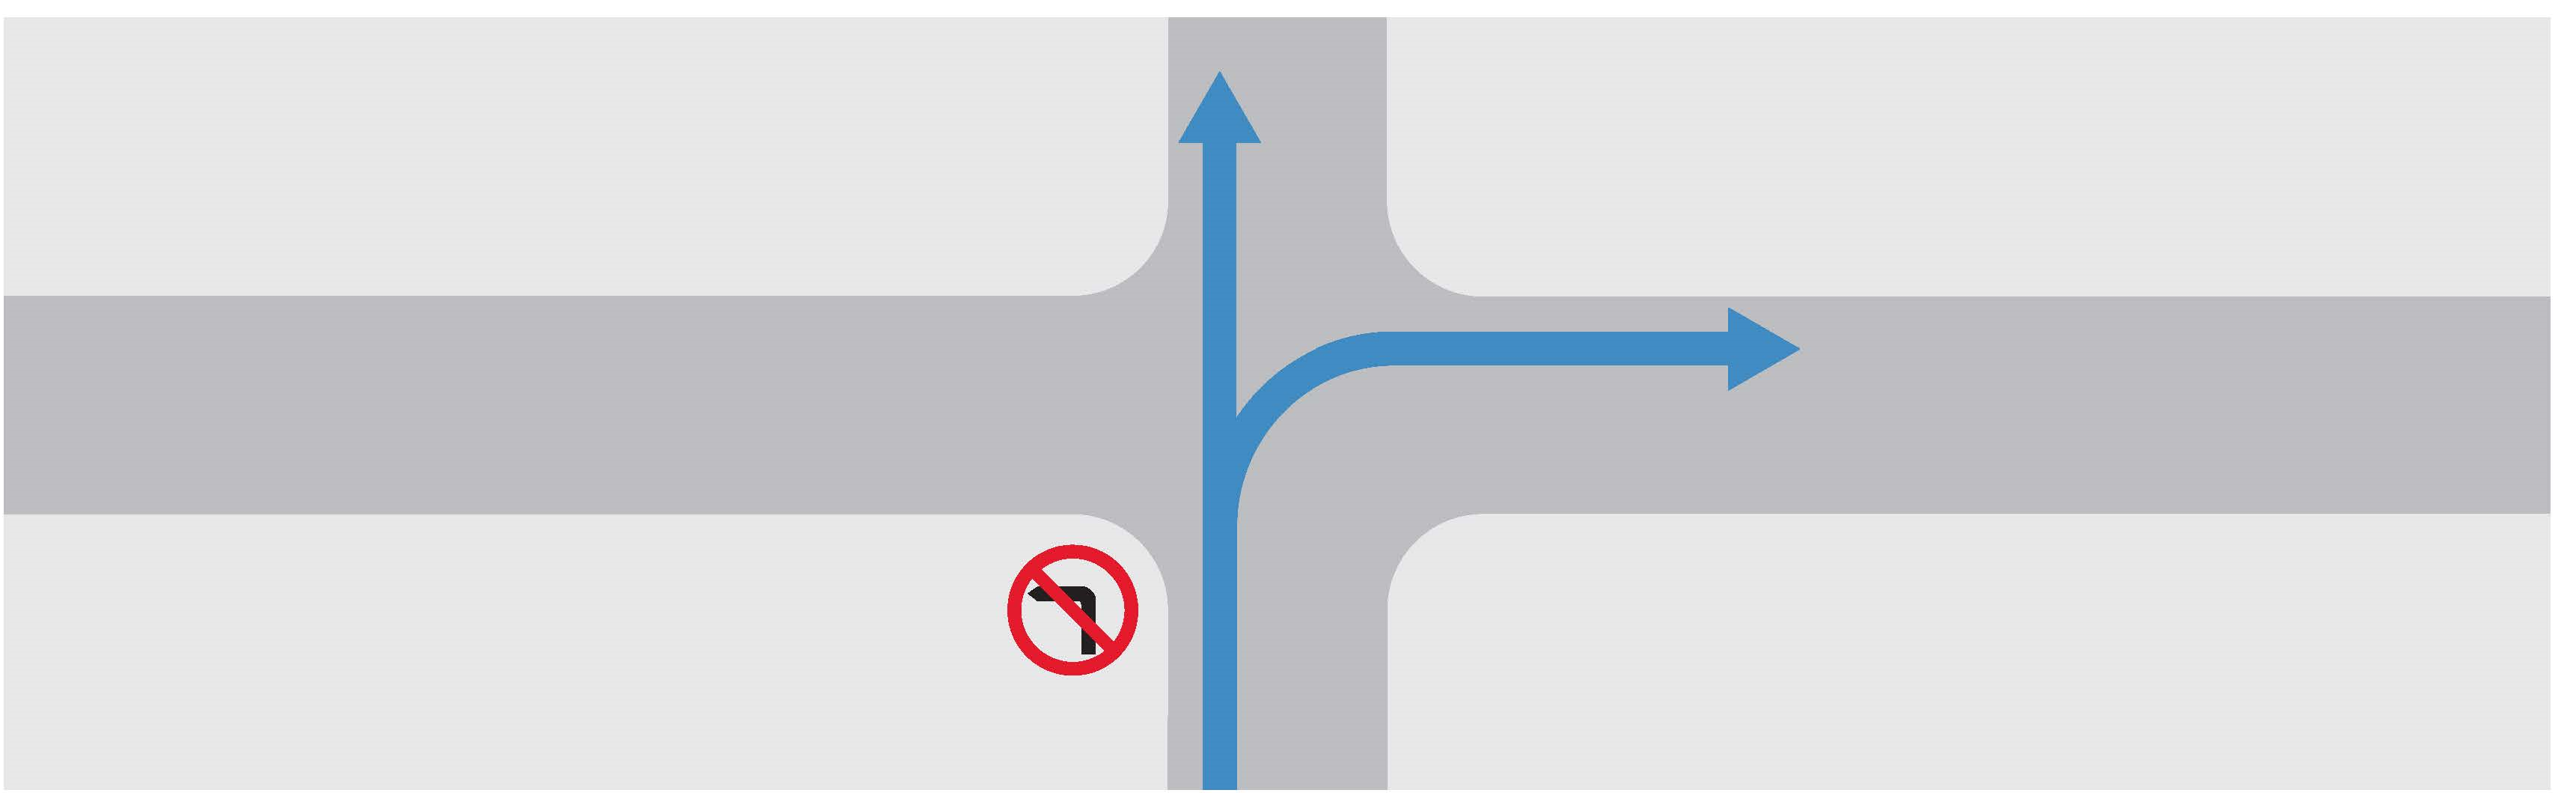 禁止转左的路口示意图